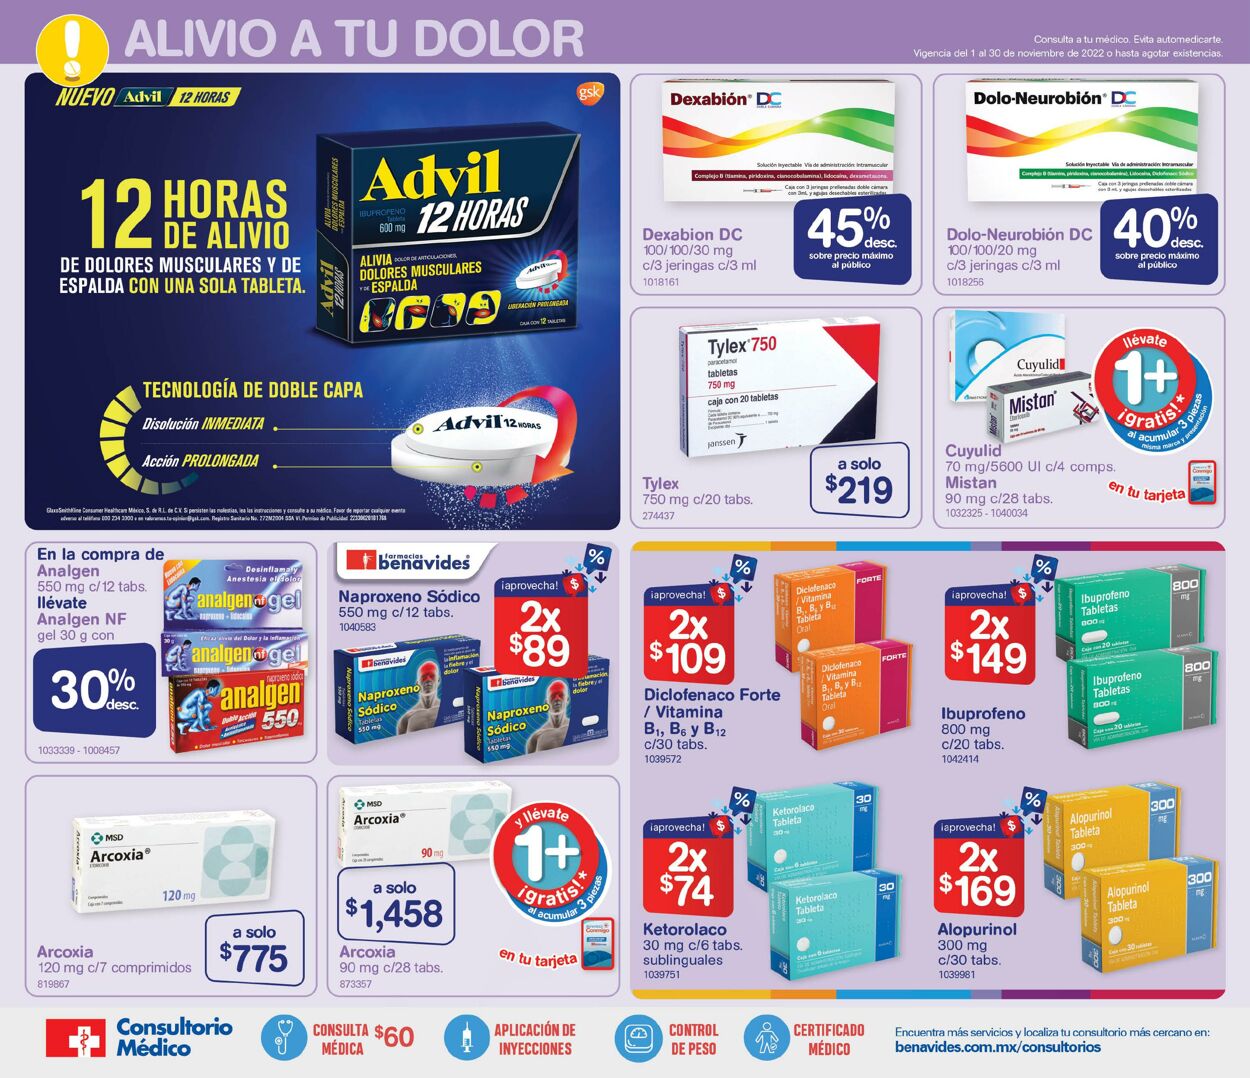 Catálogo Farmacia Benavides 01.11.2022 - 30.11.2022